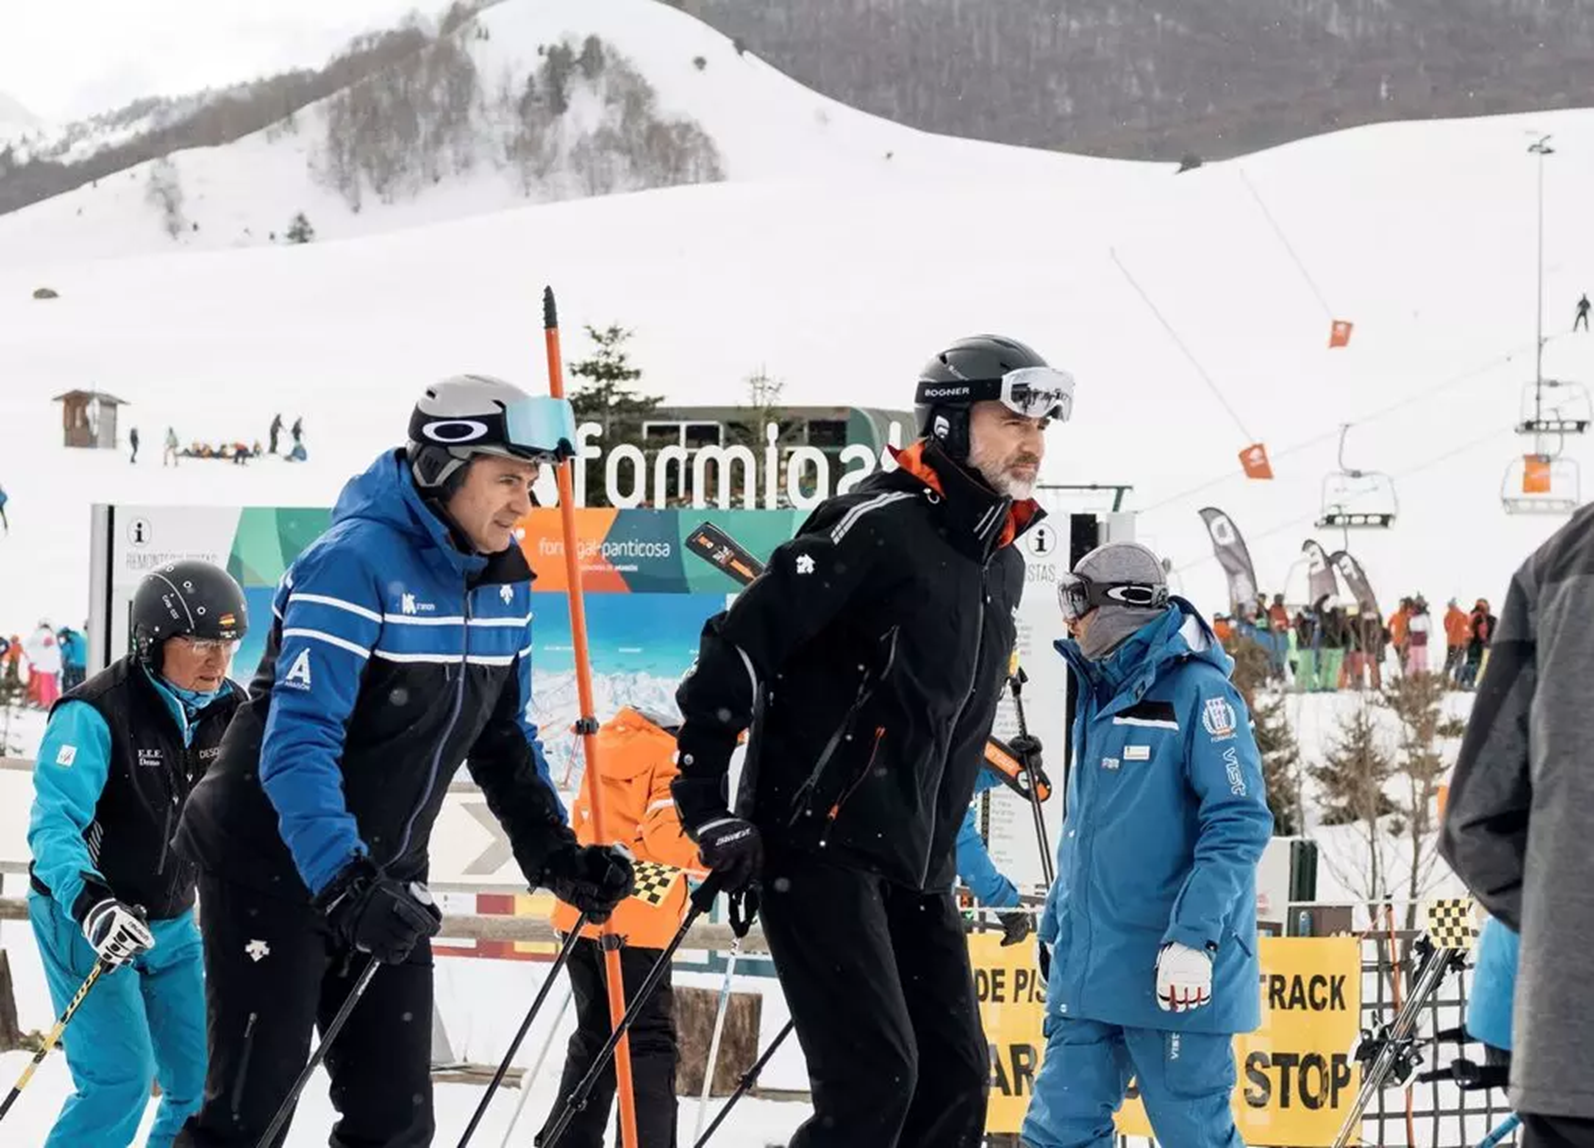 Felipe VI esquiando en el Pirineo aragons (Formigal) con Eduardo Roldn, tercero por la izquerda